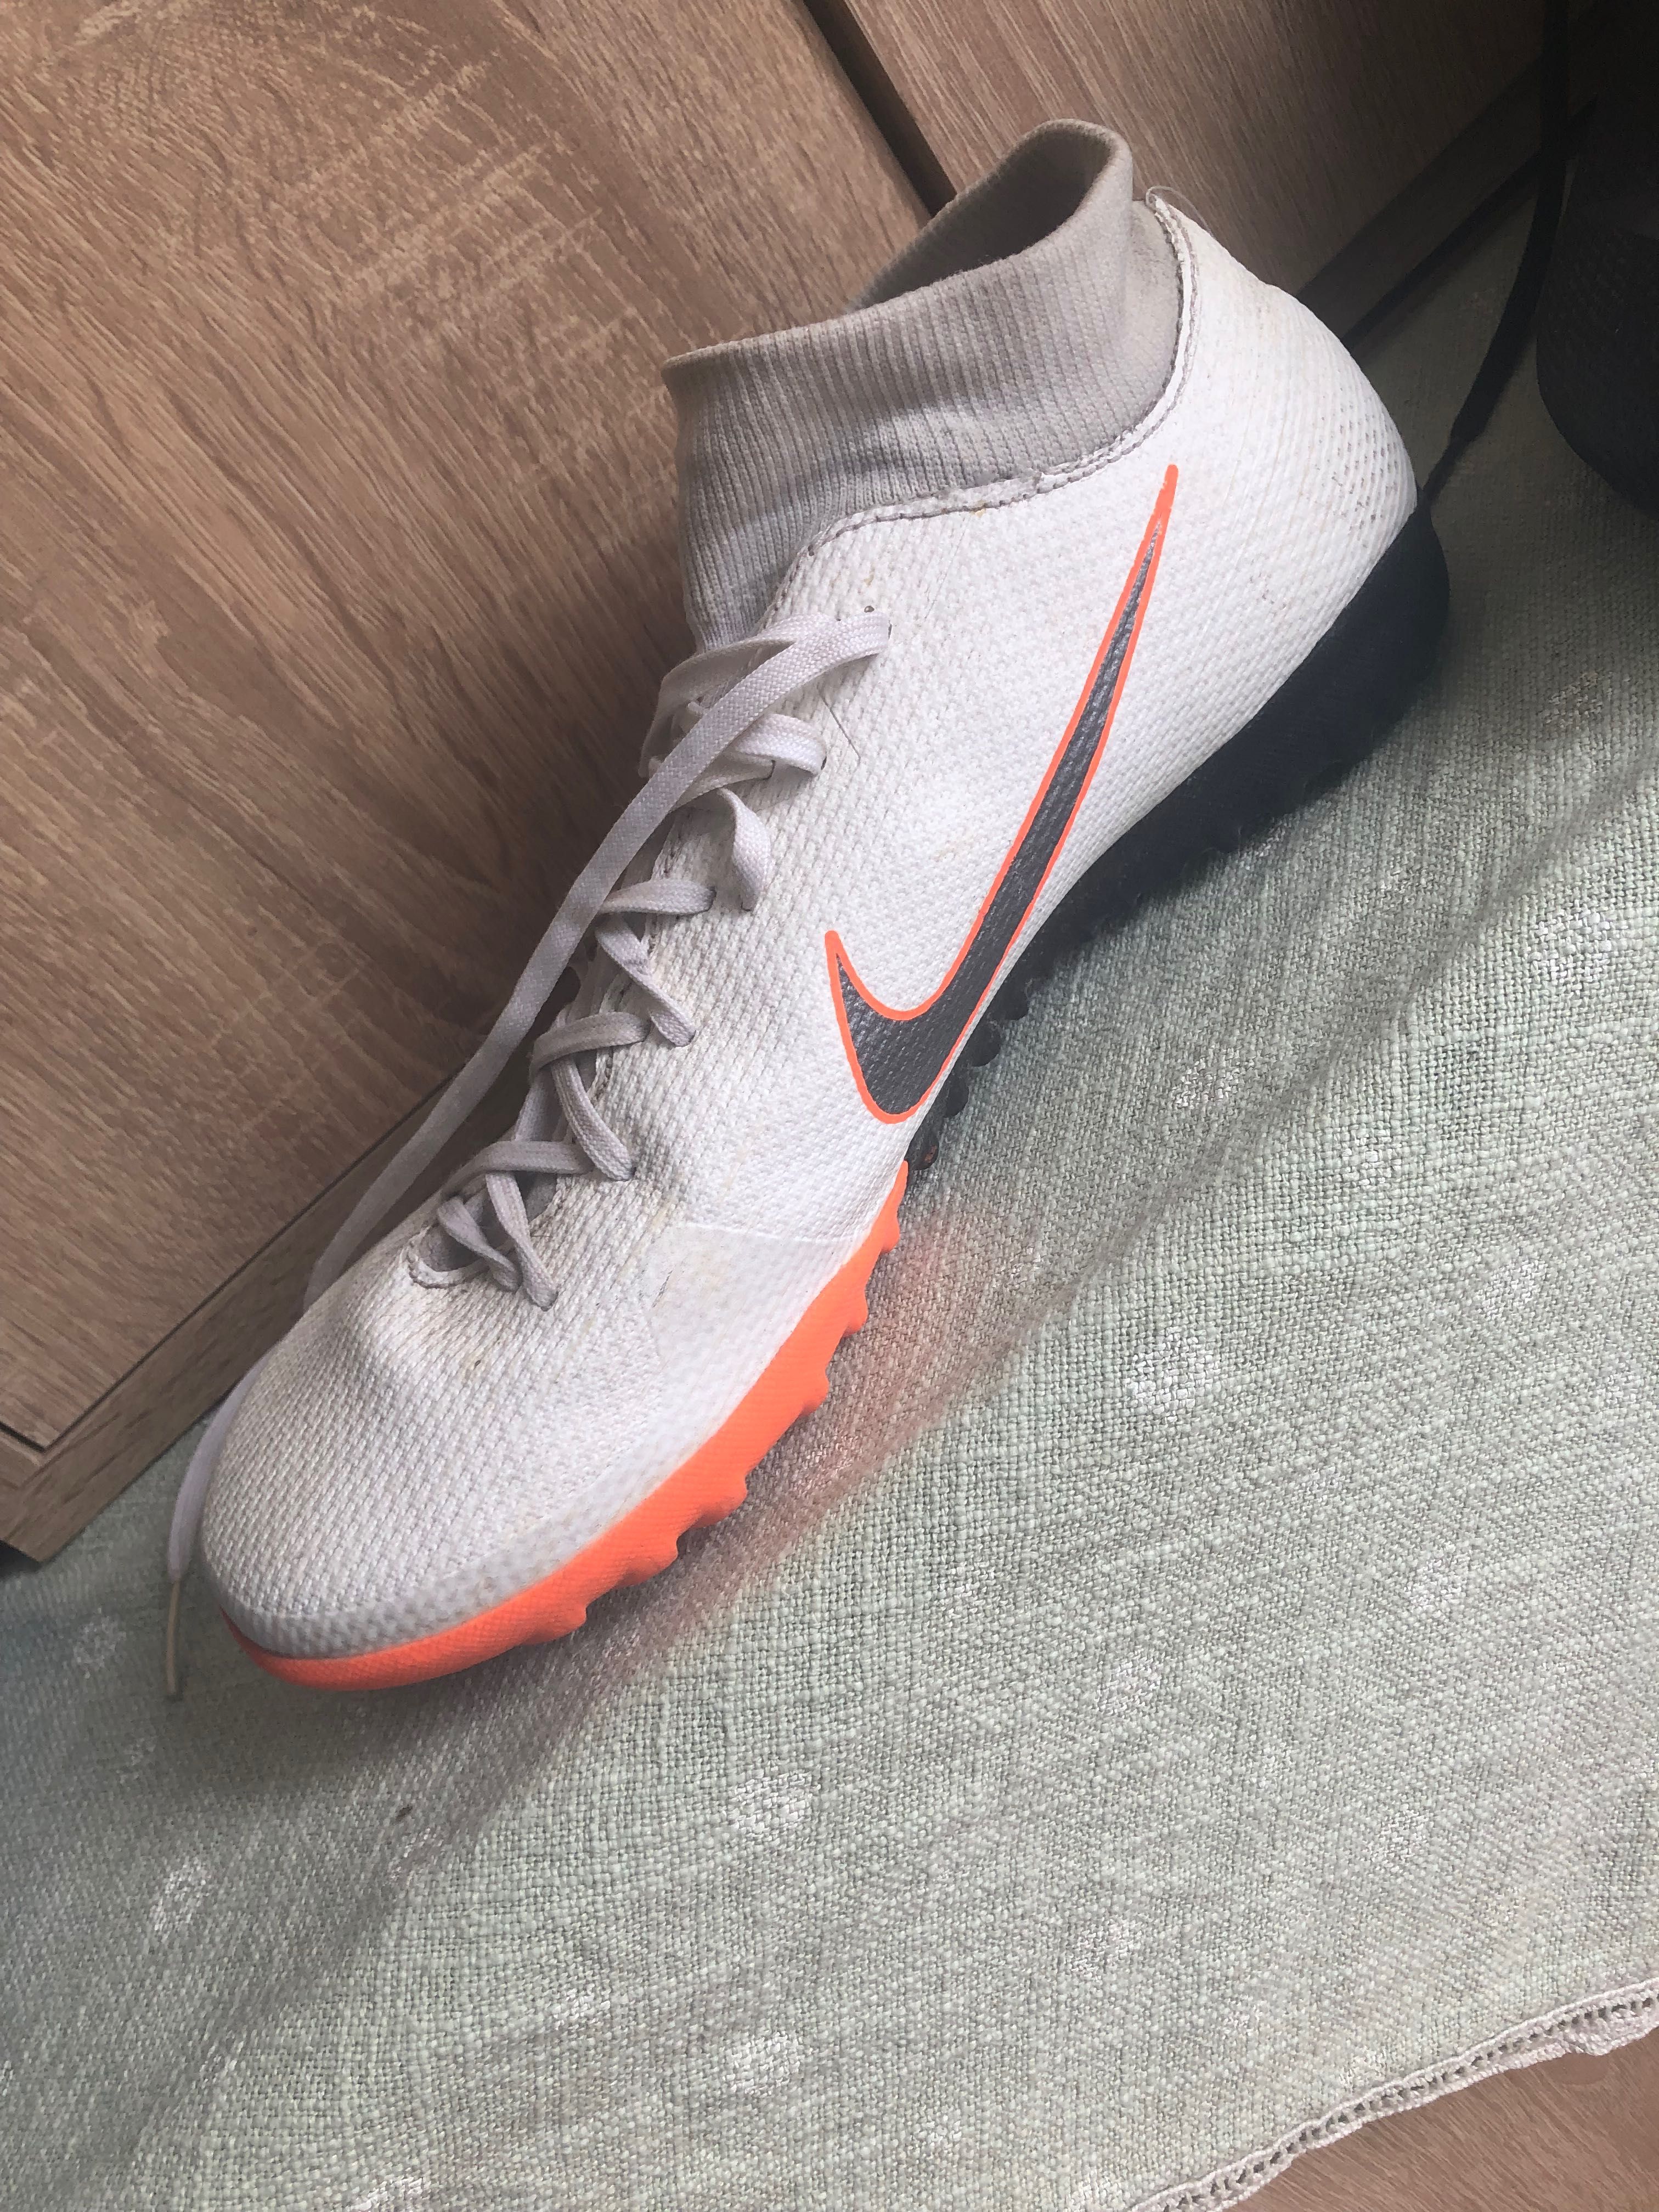 Vând ghete de sala de fotbal Nike mercurial x albe cu șoseta